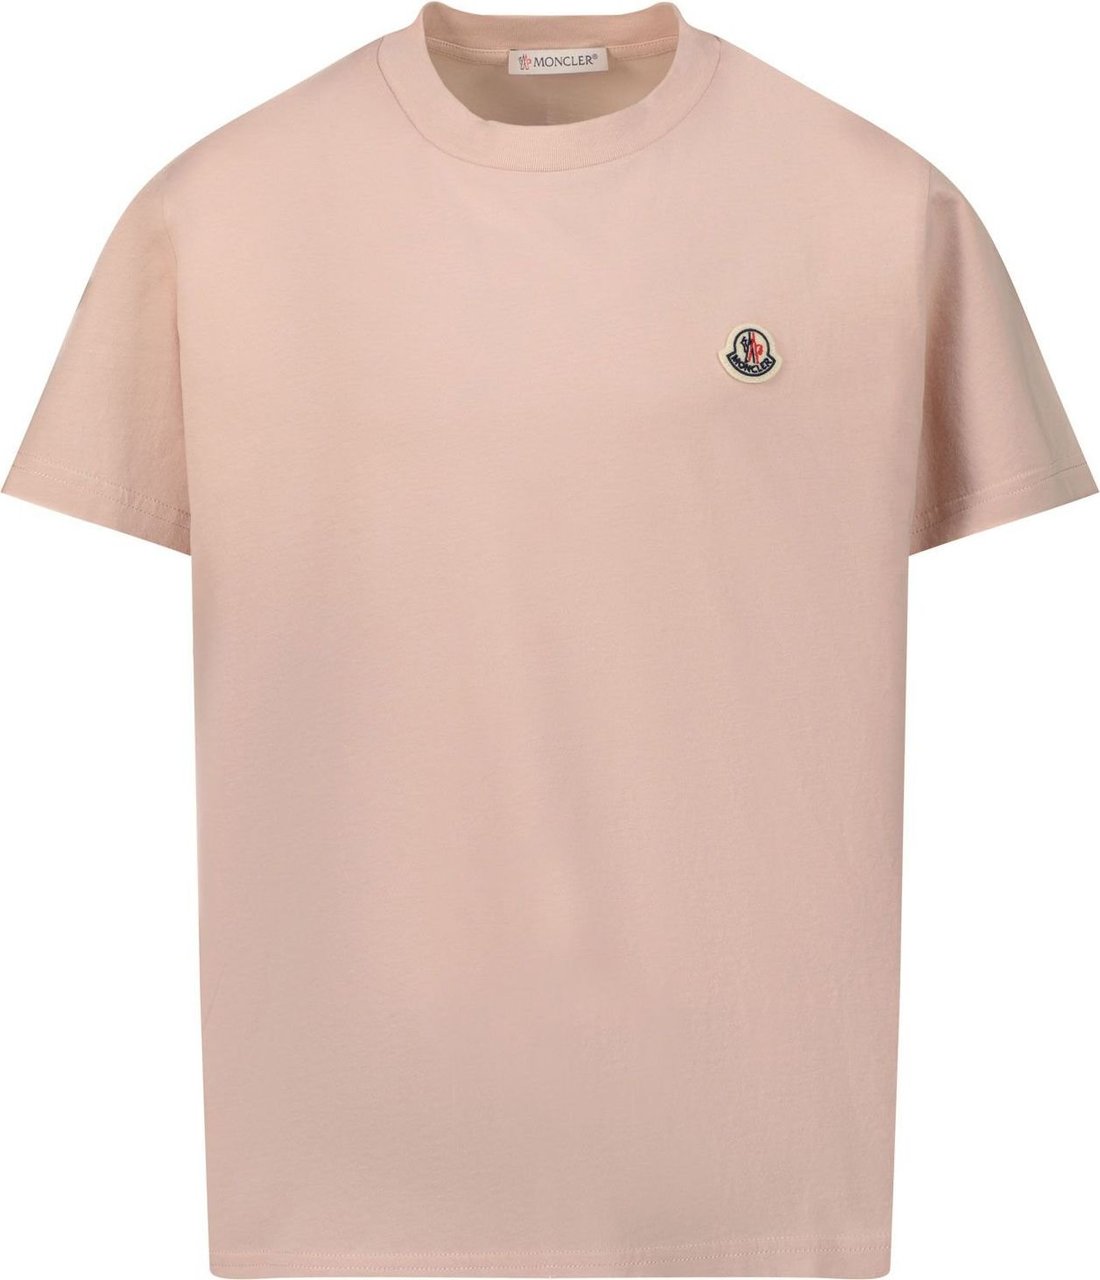 Moncler Moncler 9548C0002383907 kinder t-shirt licht roze Roze